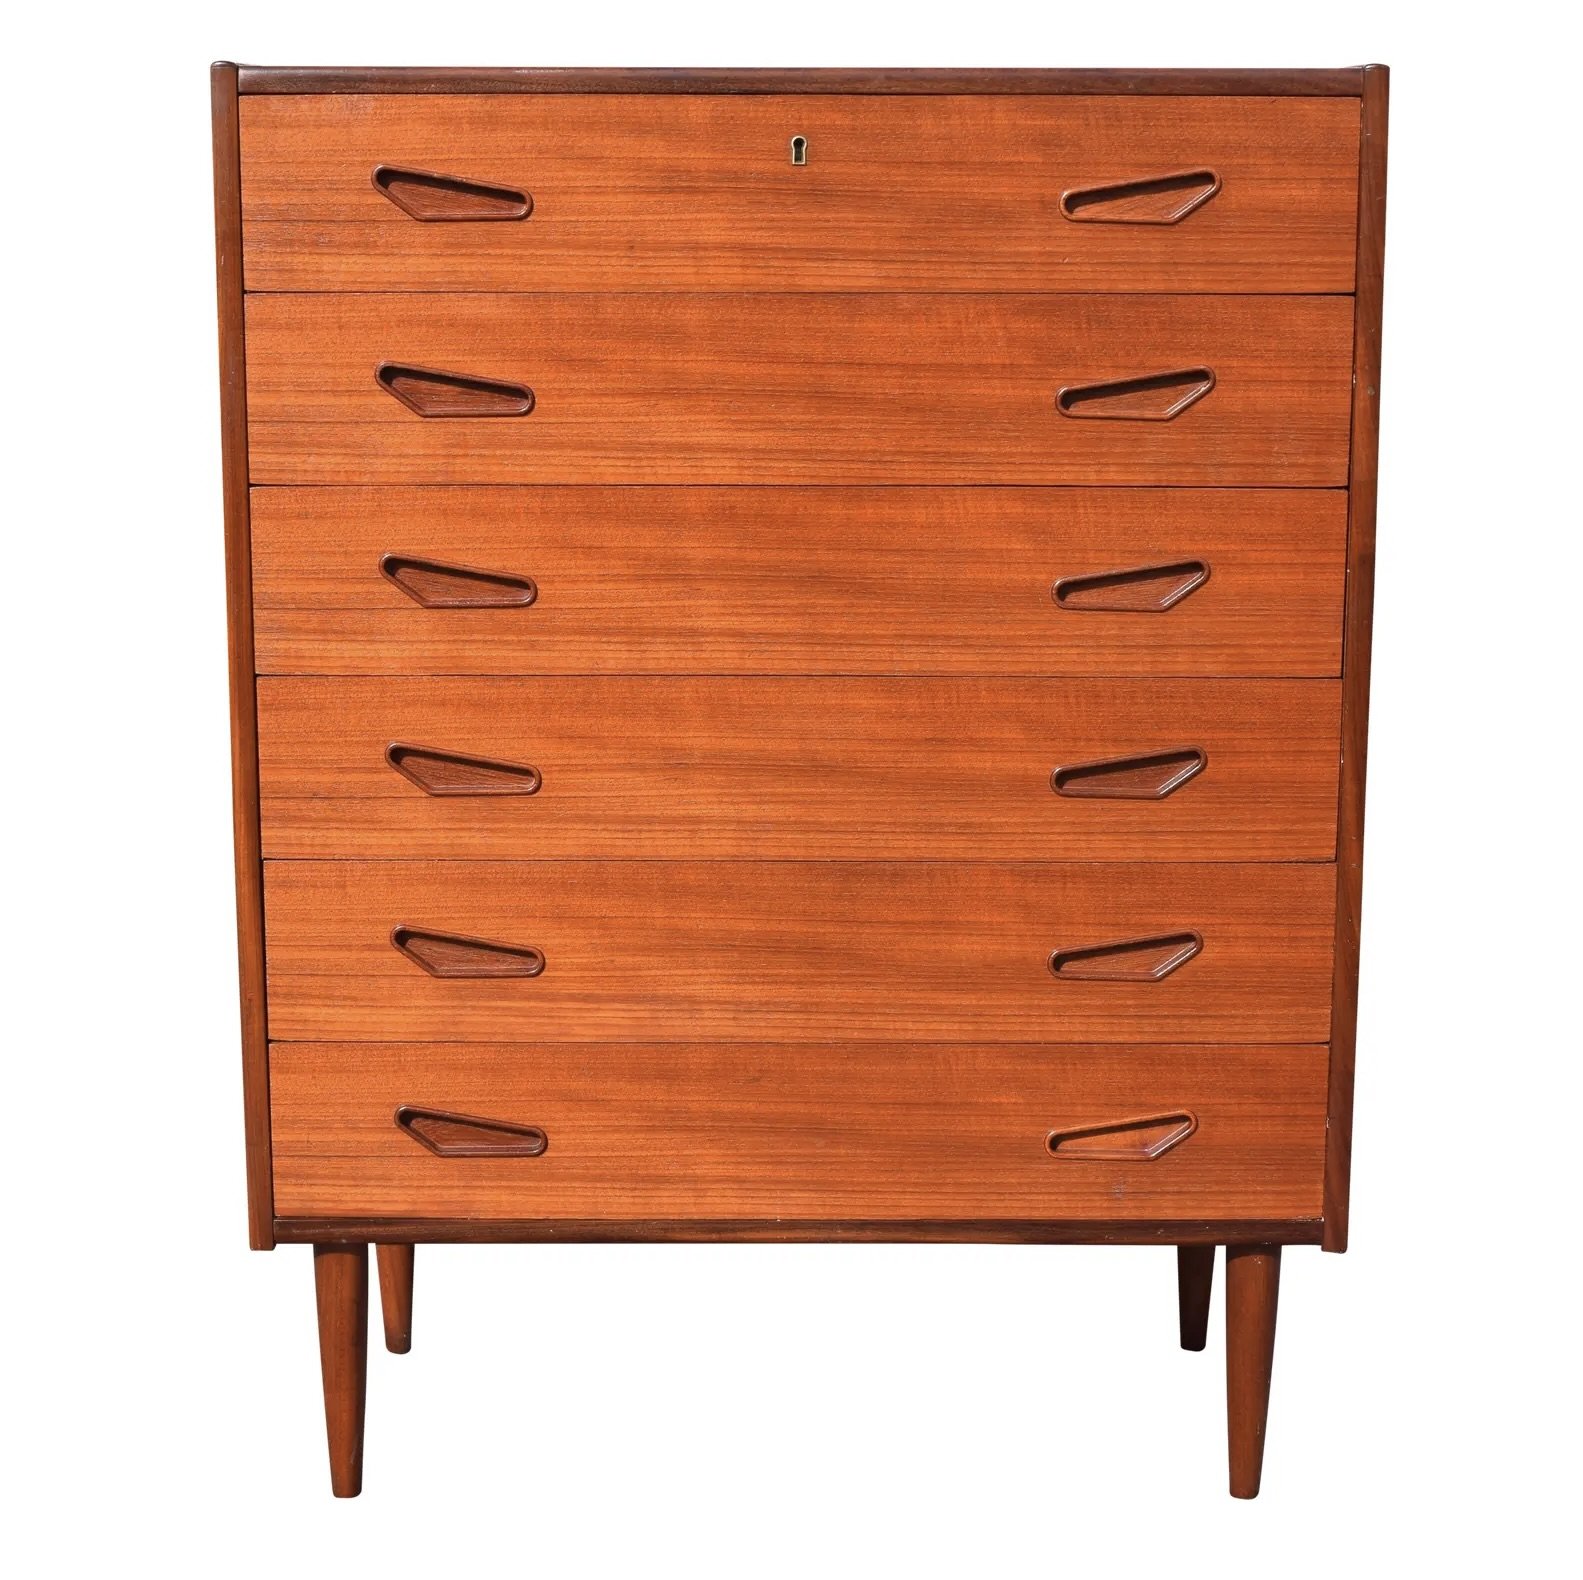 vintage-danish-mid-century-modern-chest-of-drawer-dresser-9388.jpeg